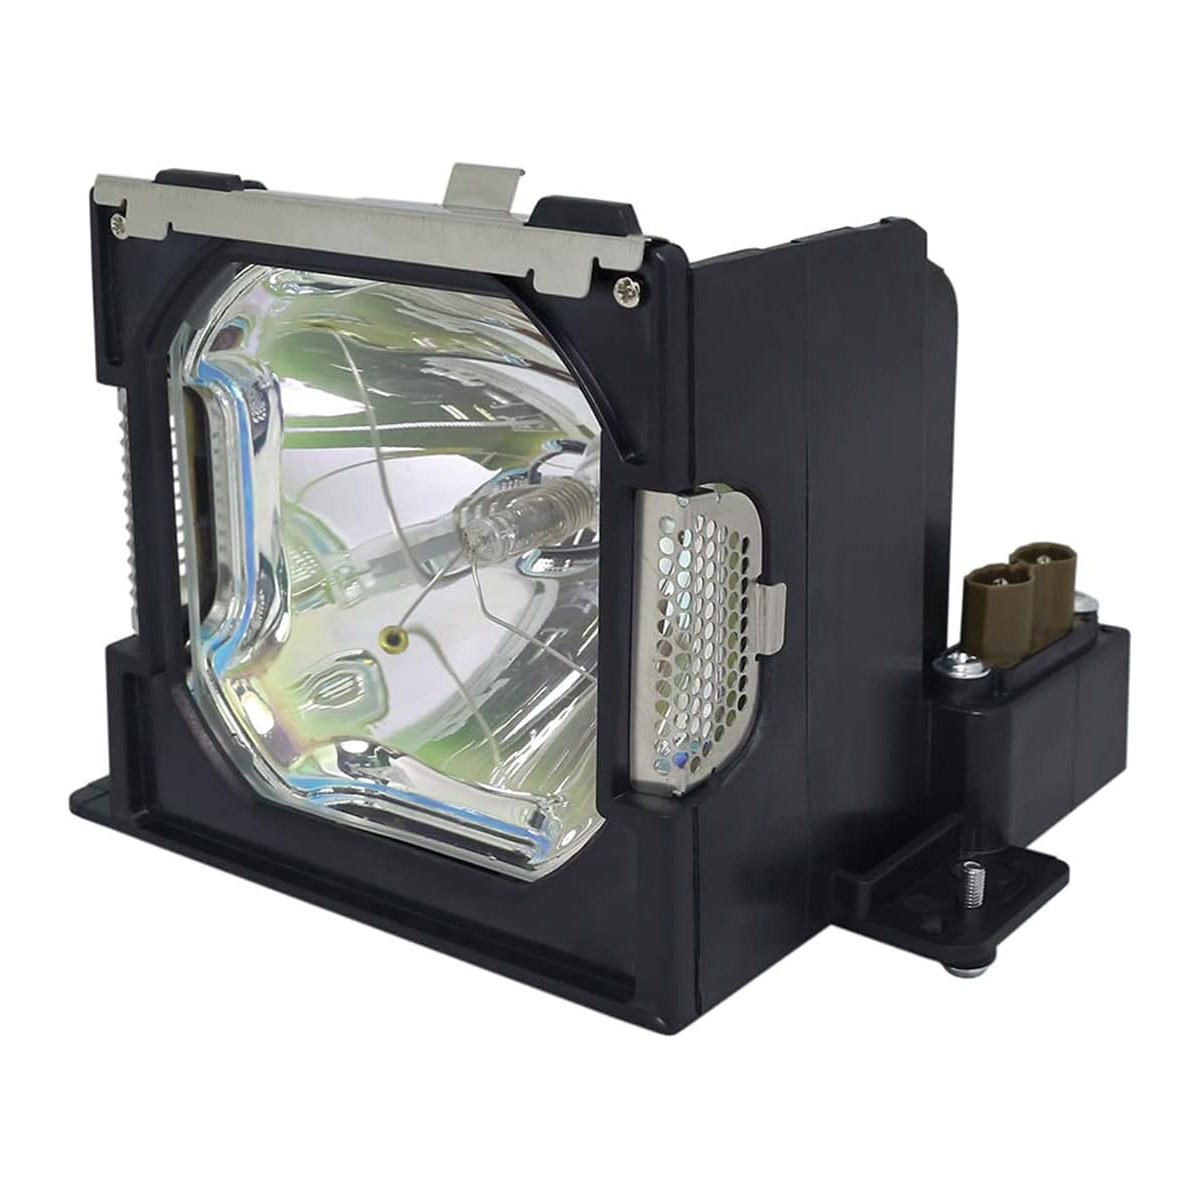 Replacement Projector lamp POA-LMP67 For Sanyo PL C-XP50 PL C-XP50L PL C-XP55